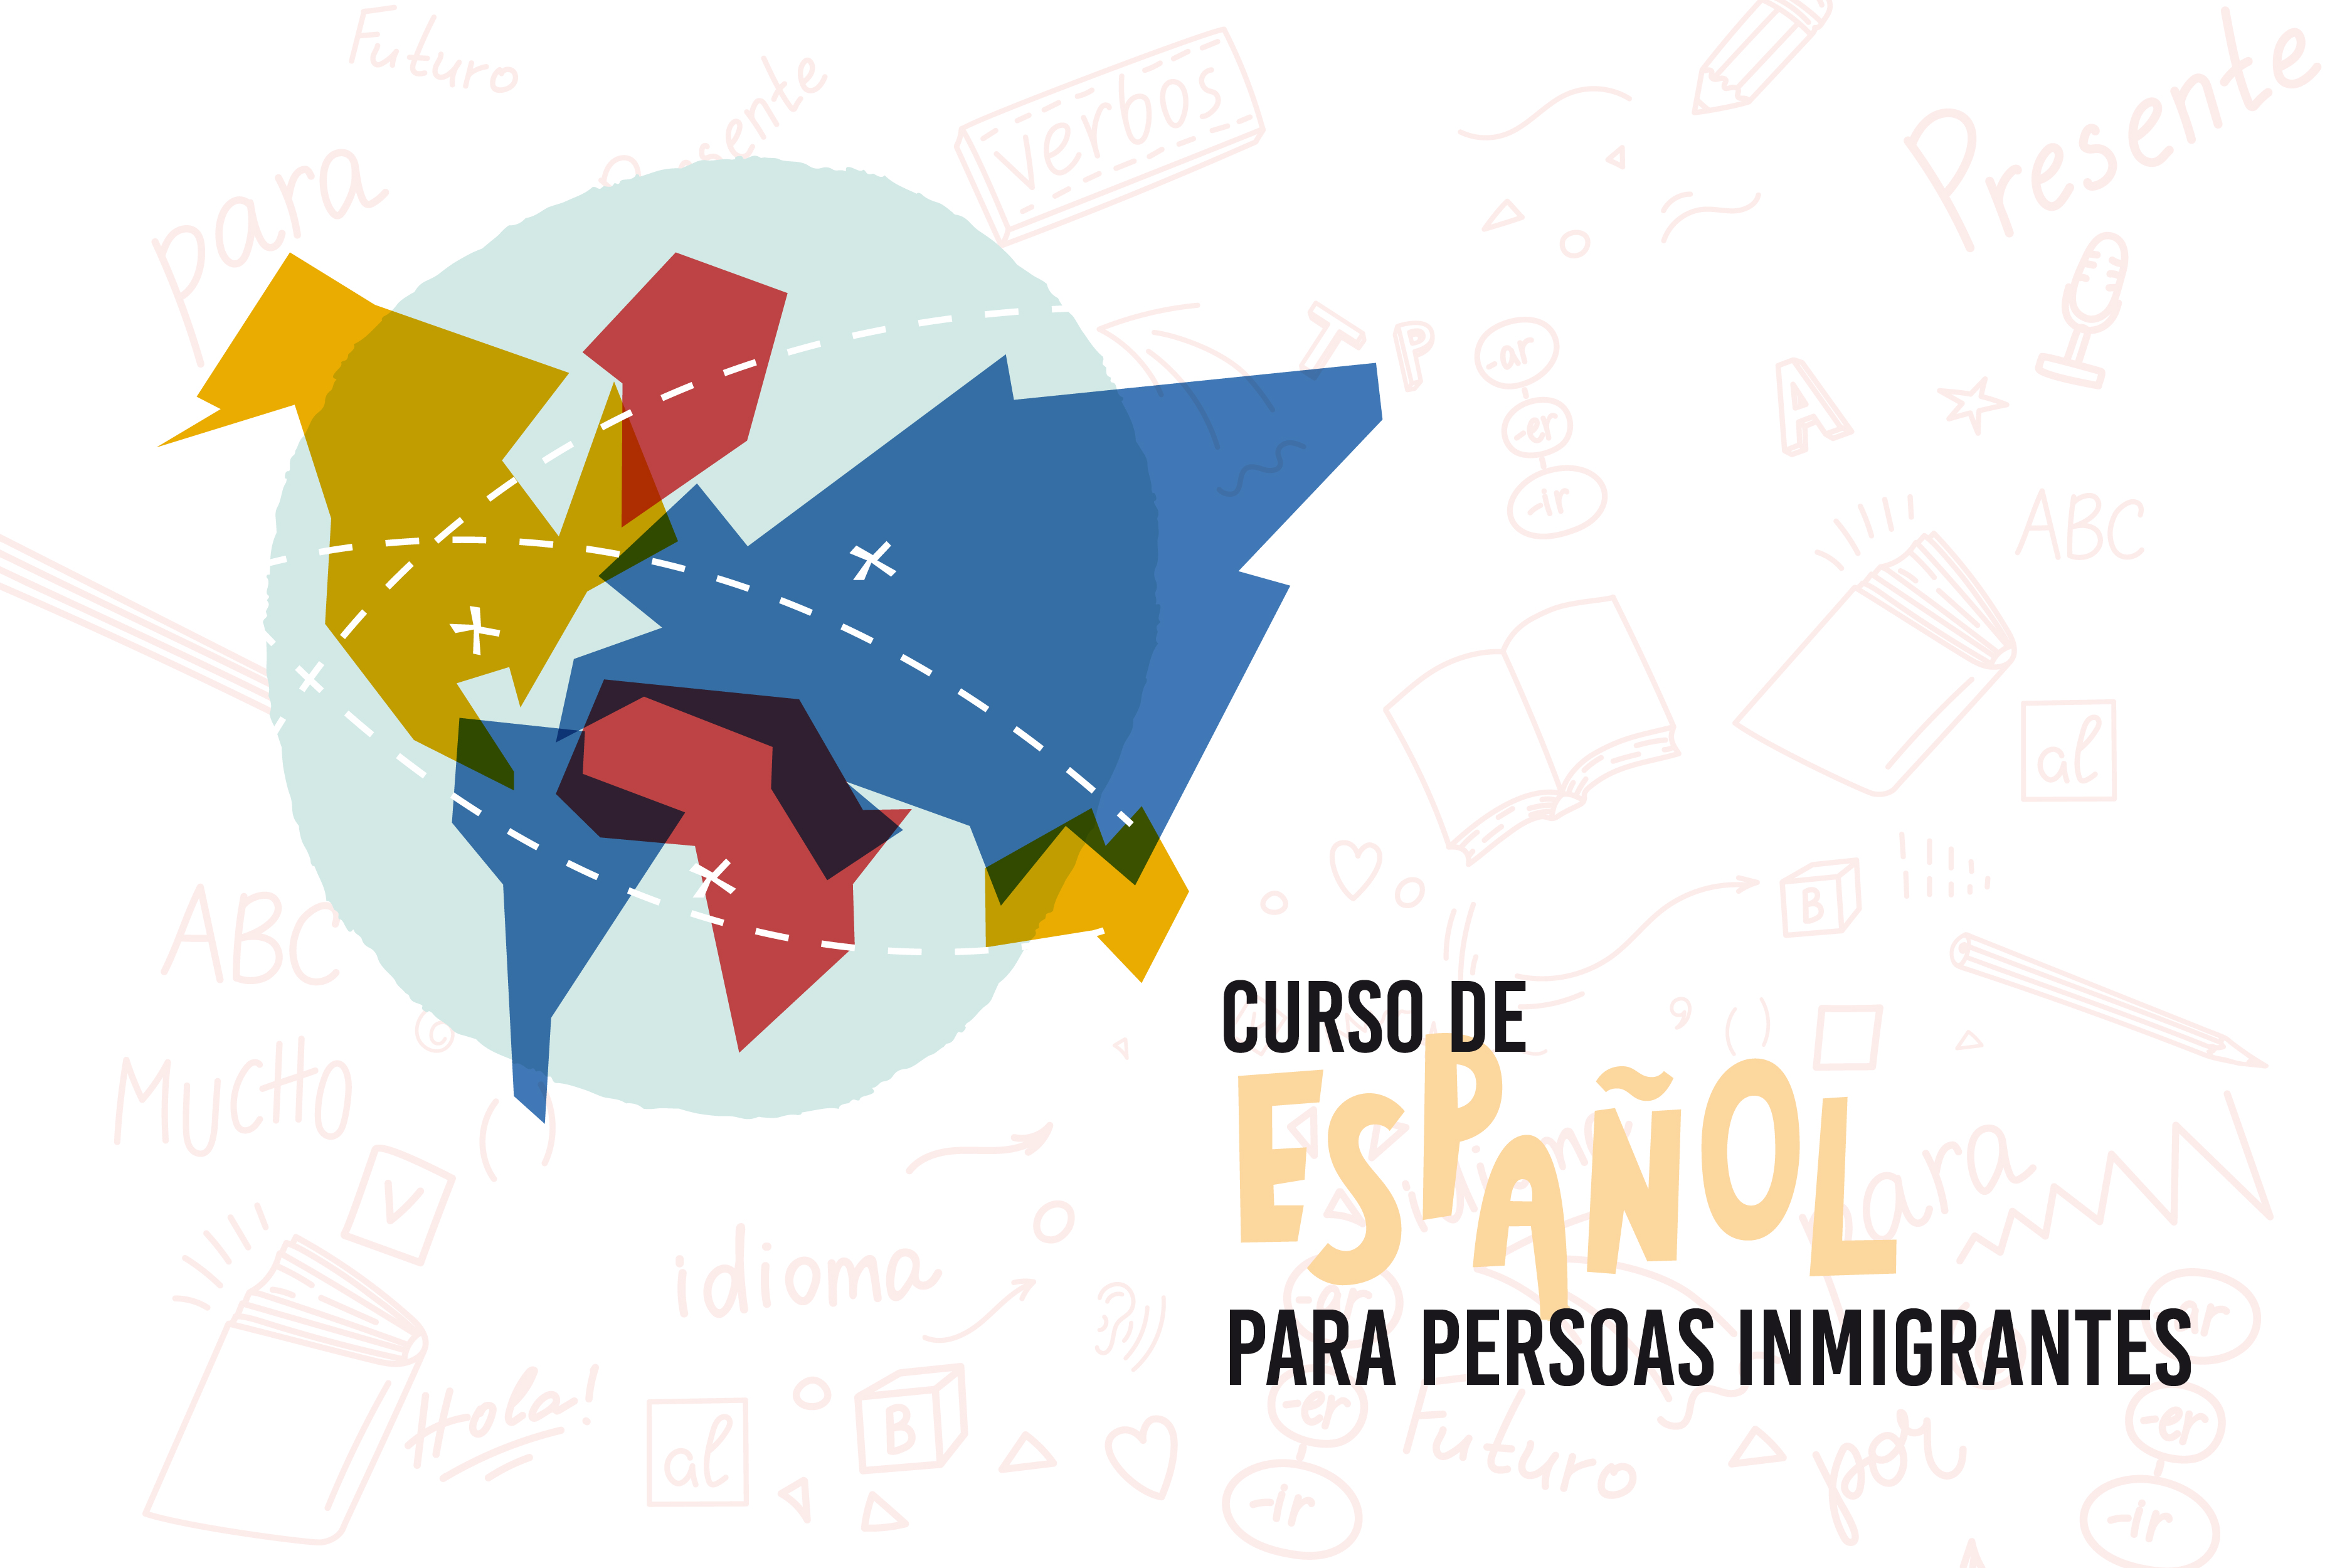  
		Unha vintena de participantes de catro países inician en Pontevedra o curso de Español para persoas inmigrantes
	